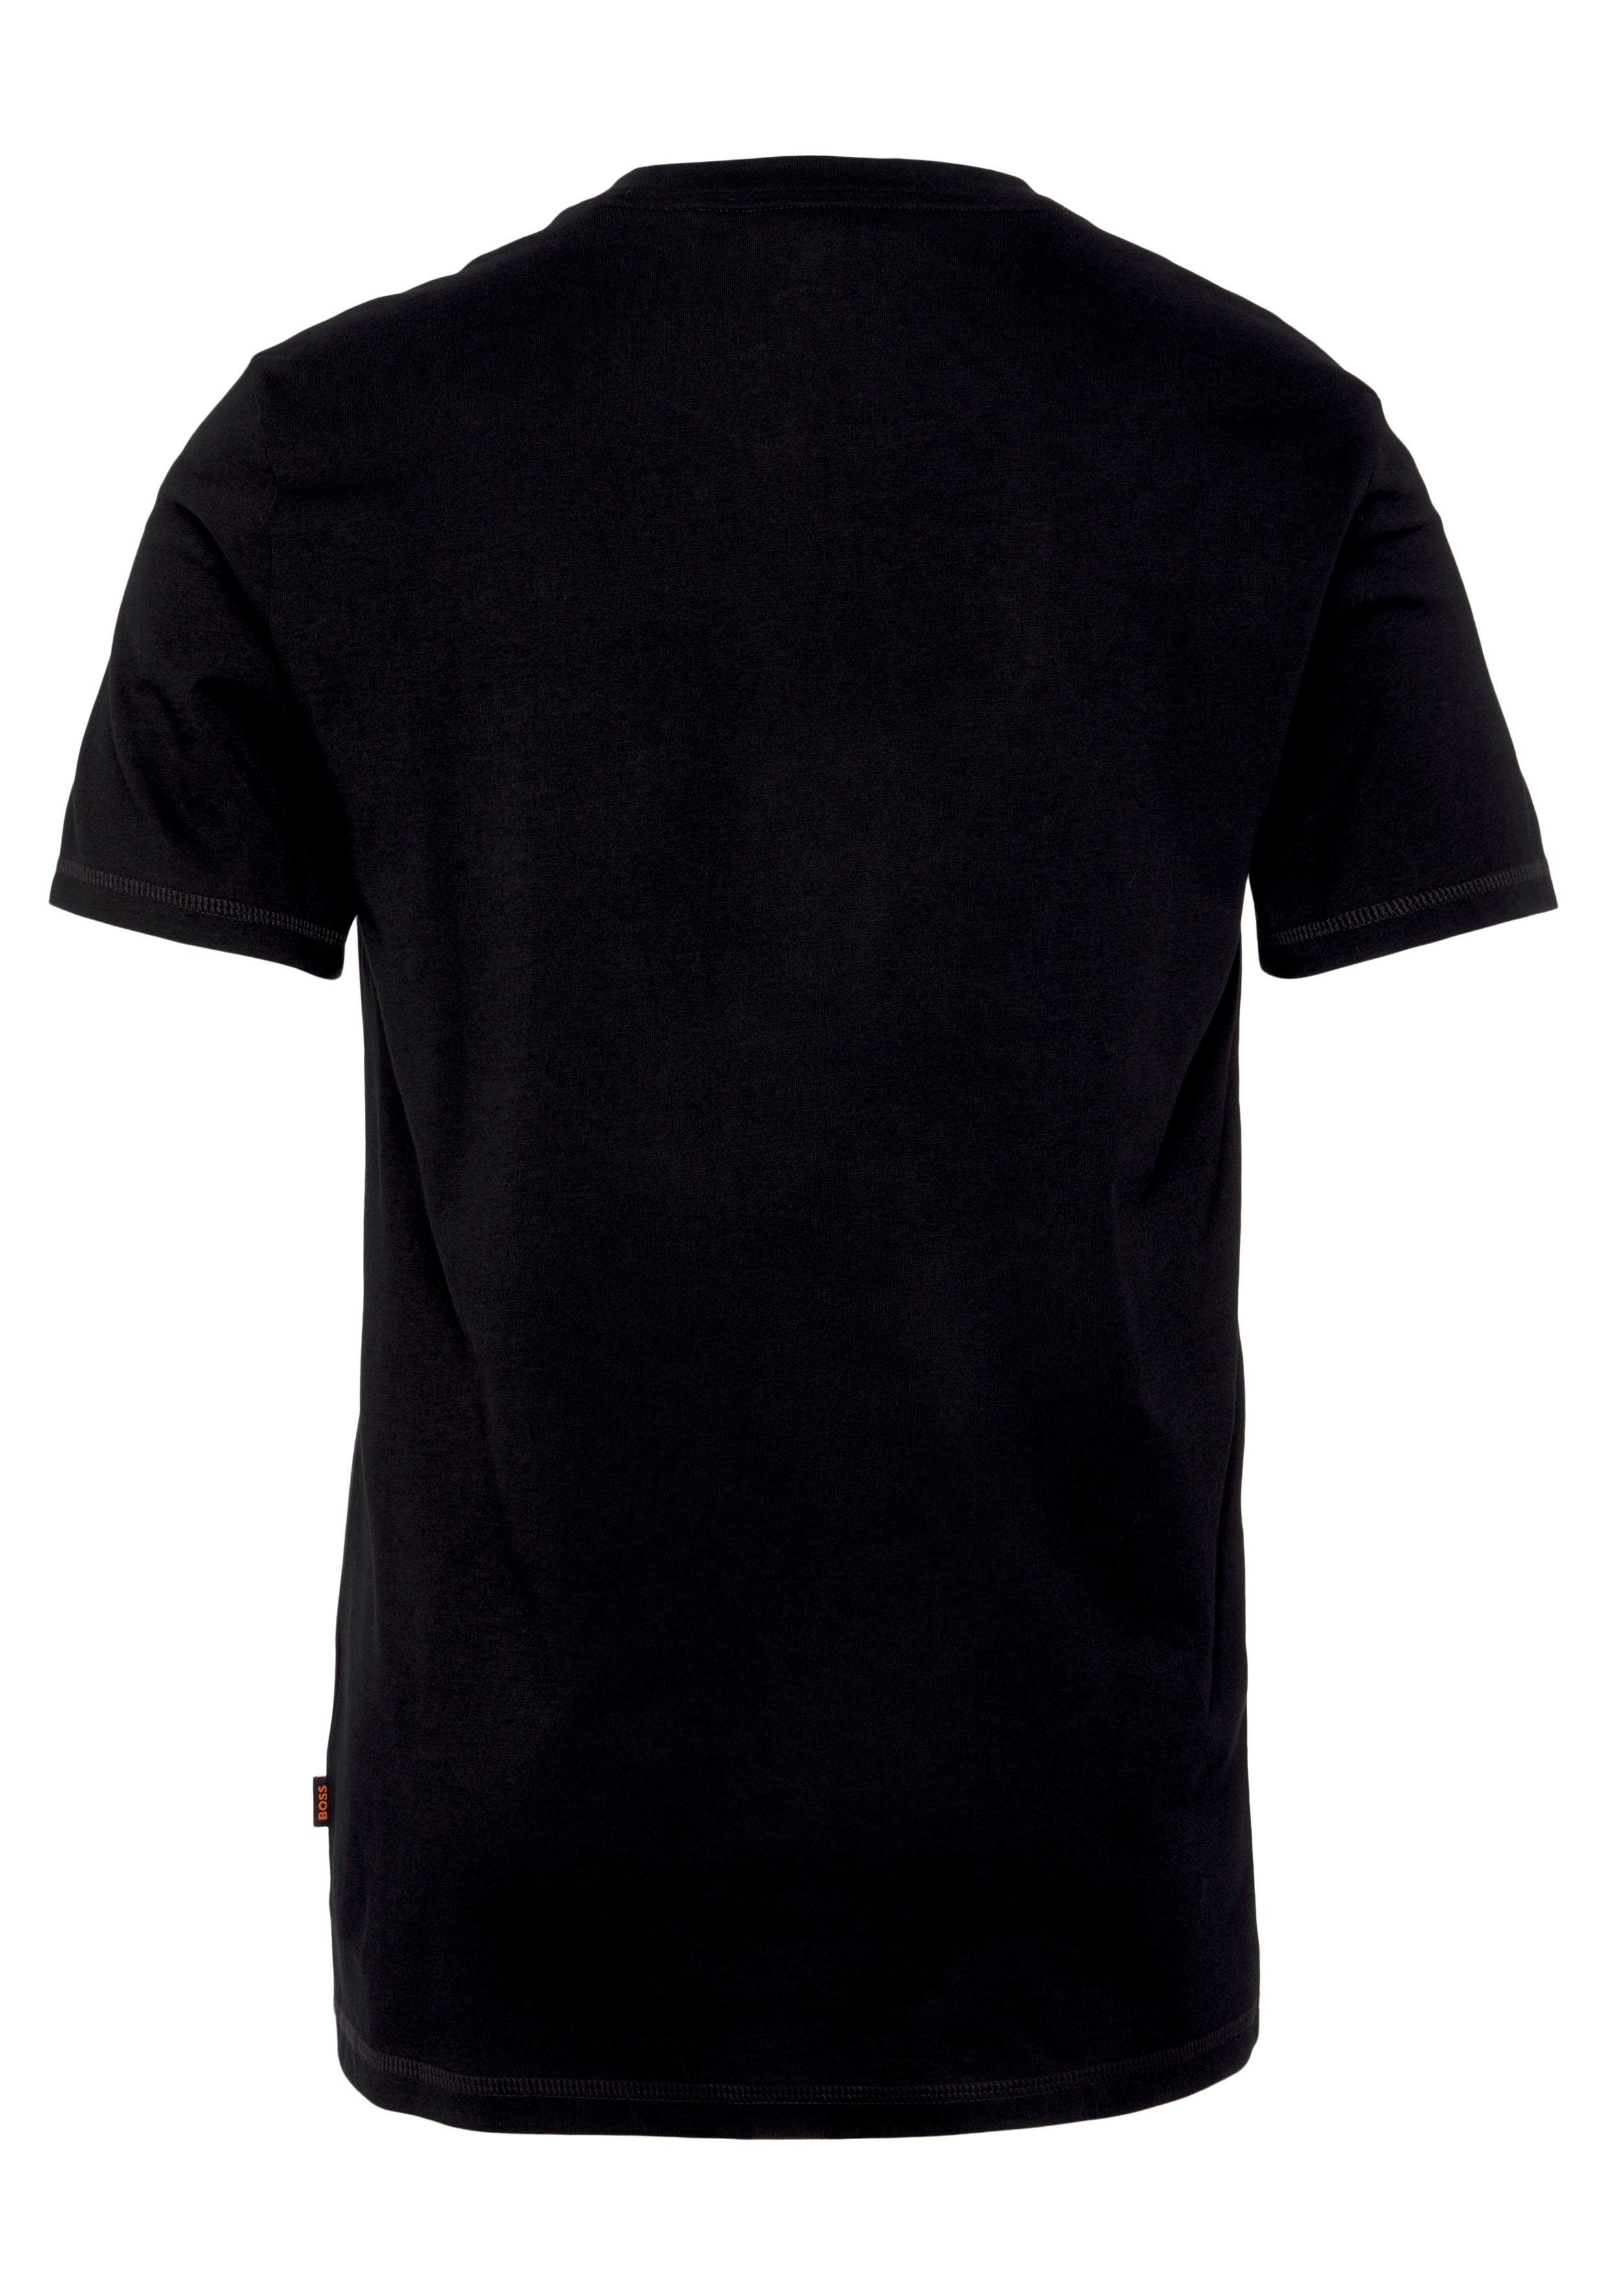 ORANGE der BOSS mit auf großem T-Shirt Black001 Print Brust TeMessage